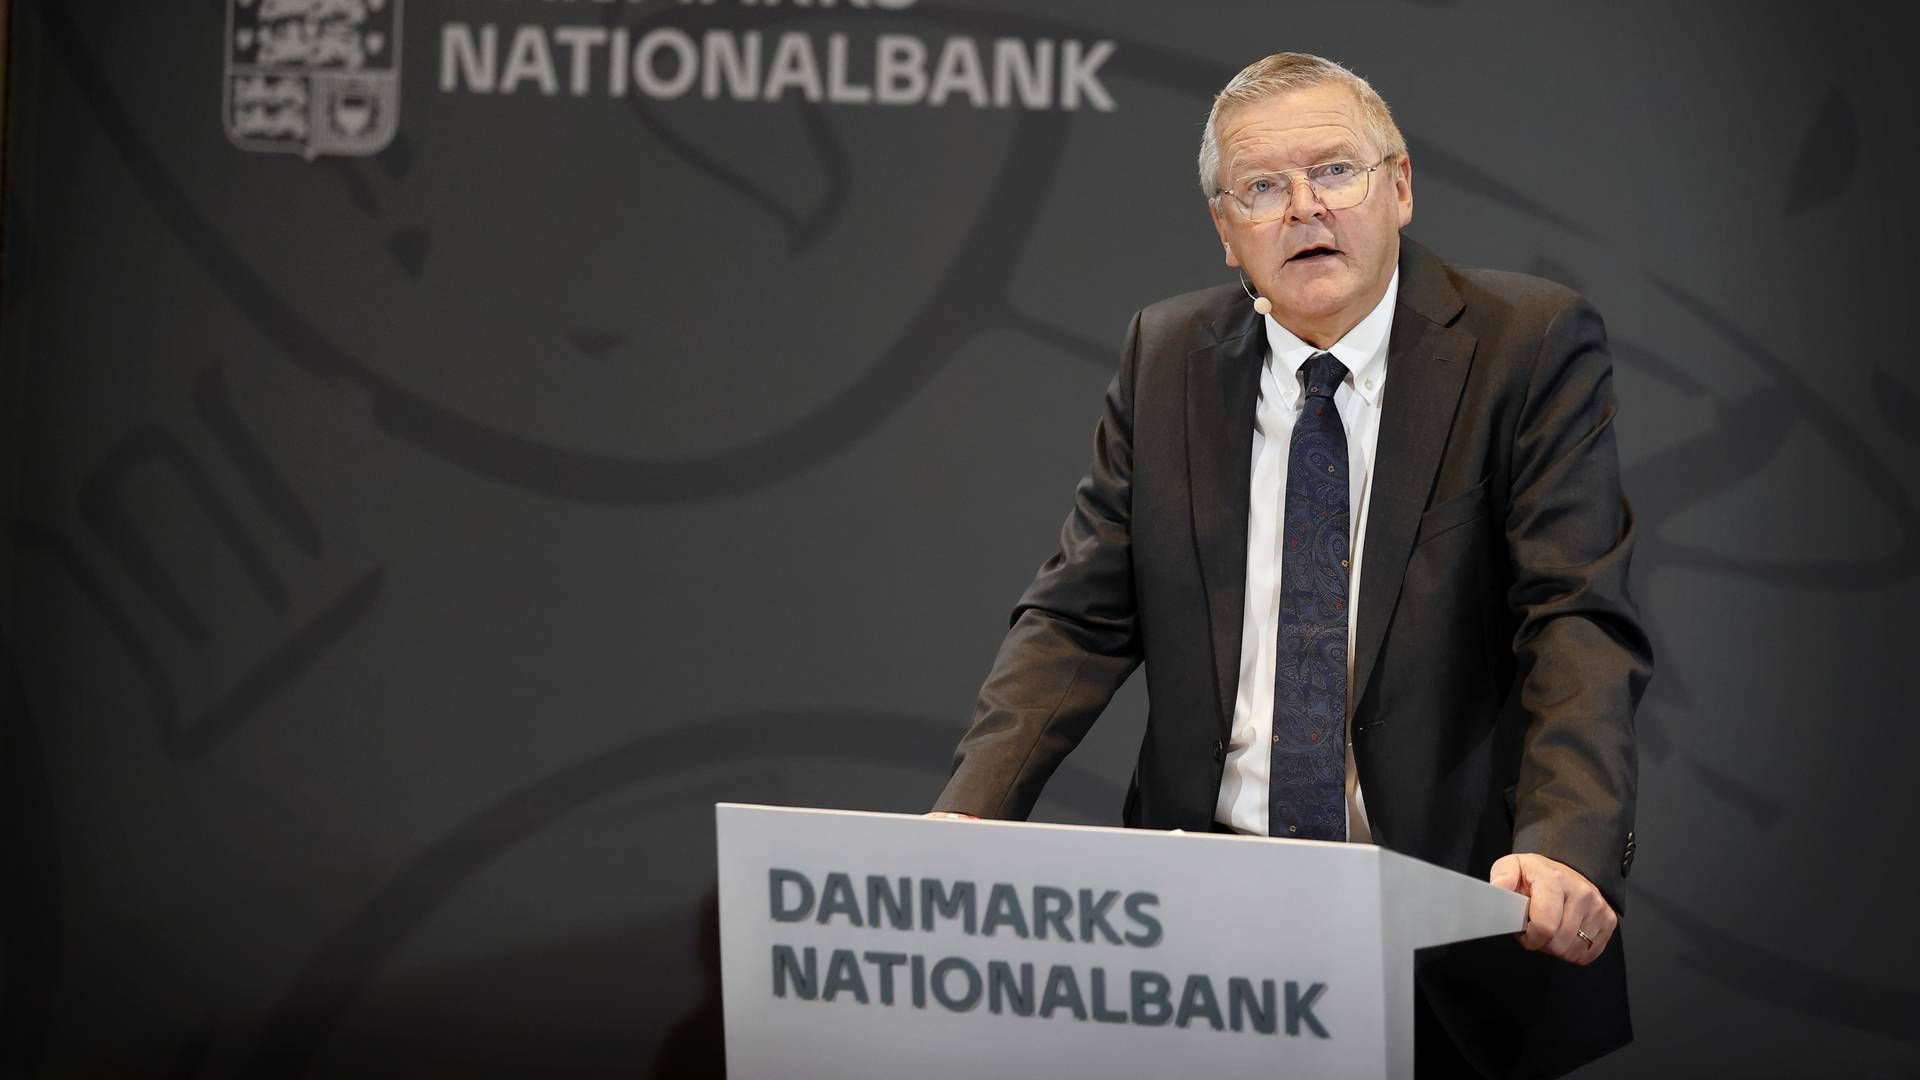 Økonomien er på vej mod en mild højkonkunktur, siger nationalbankdirektør Lars Rohde. | Foto: Jens Dresling